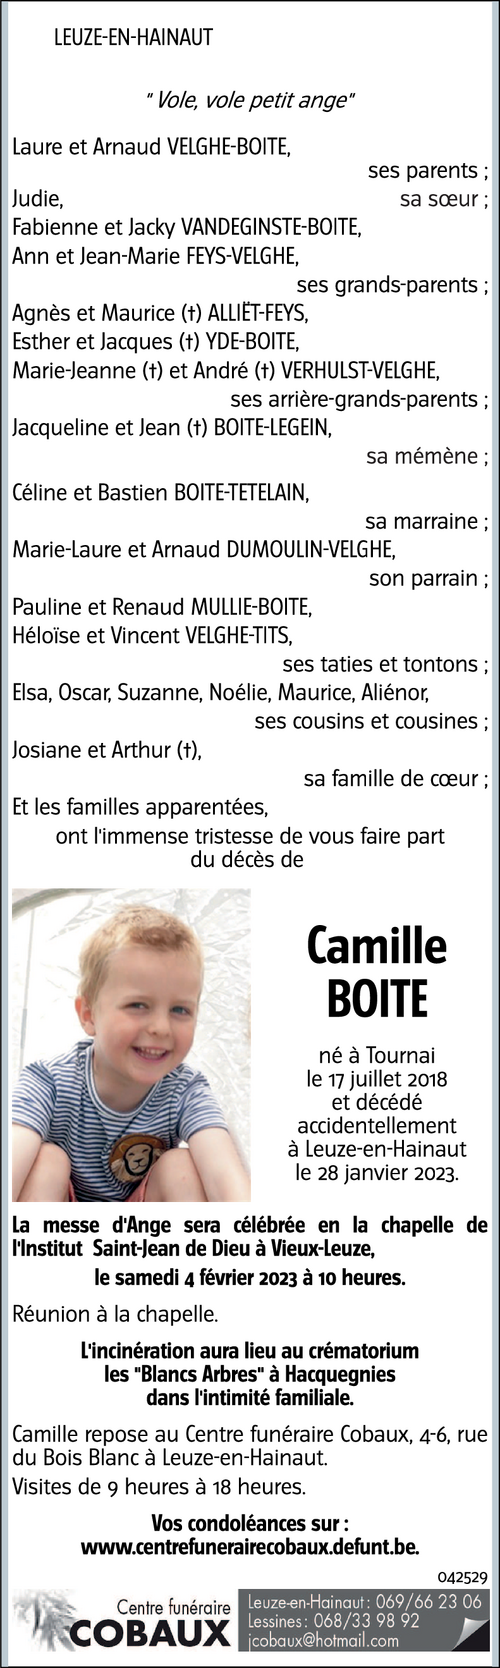 Camille BOITE